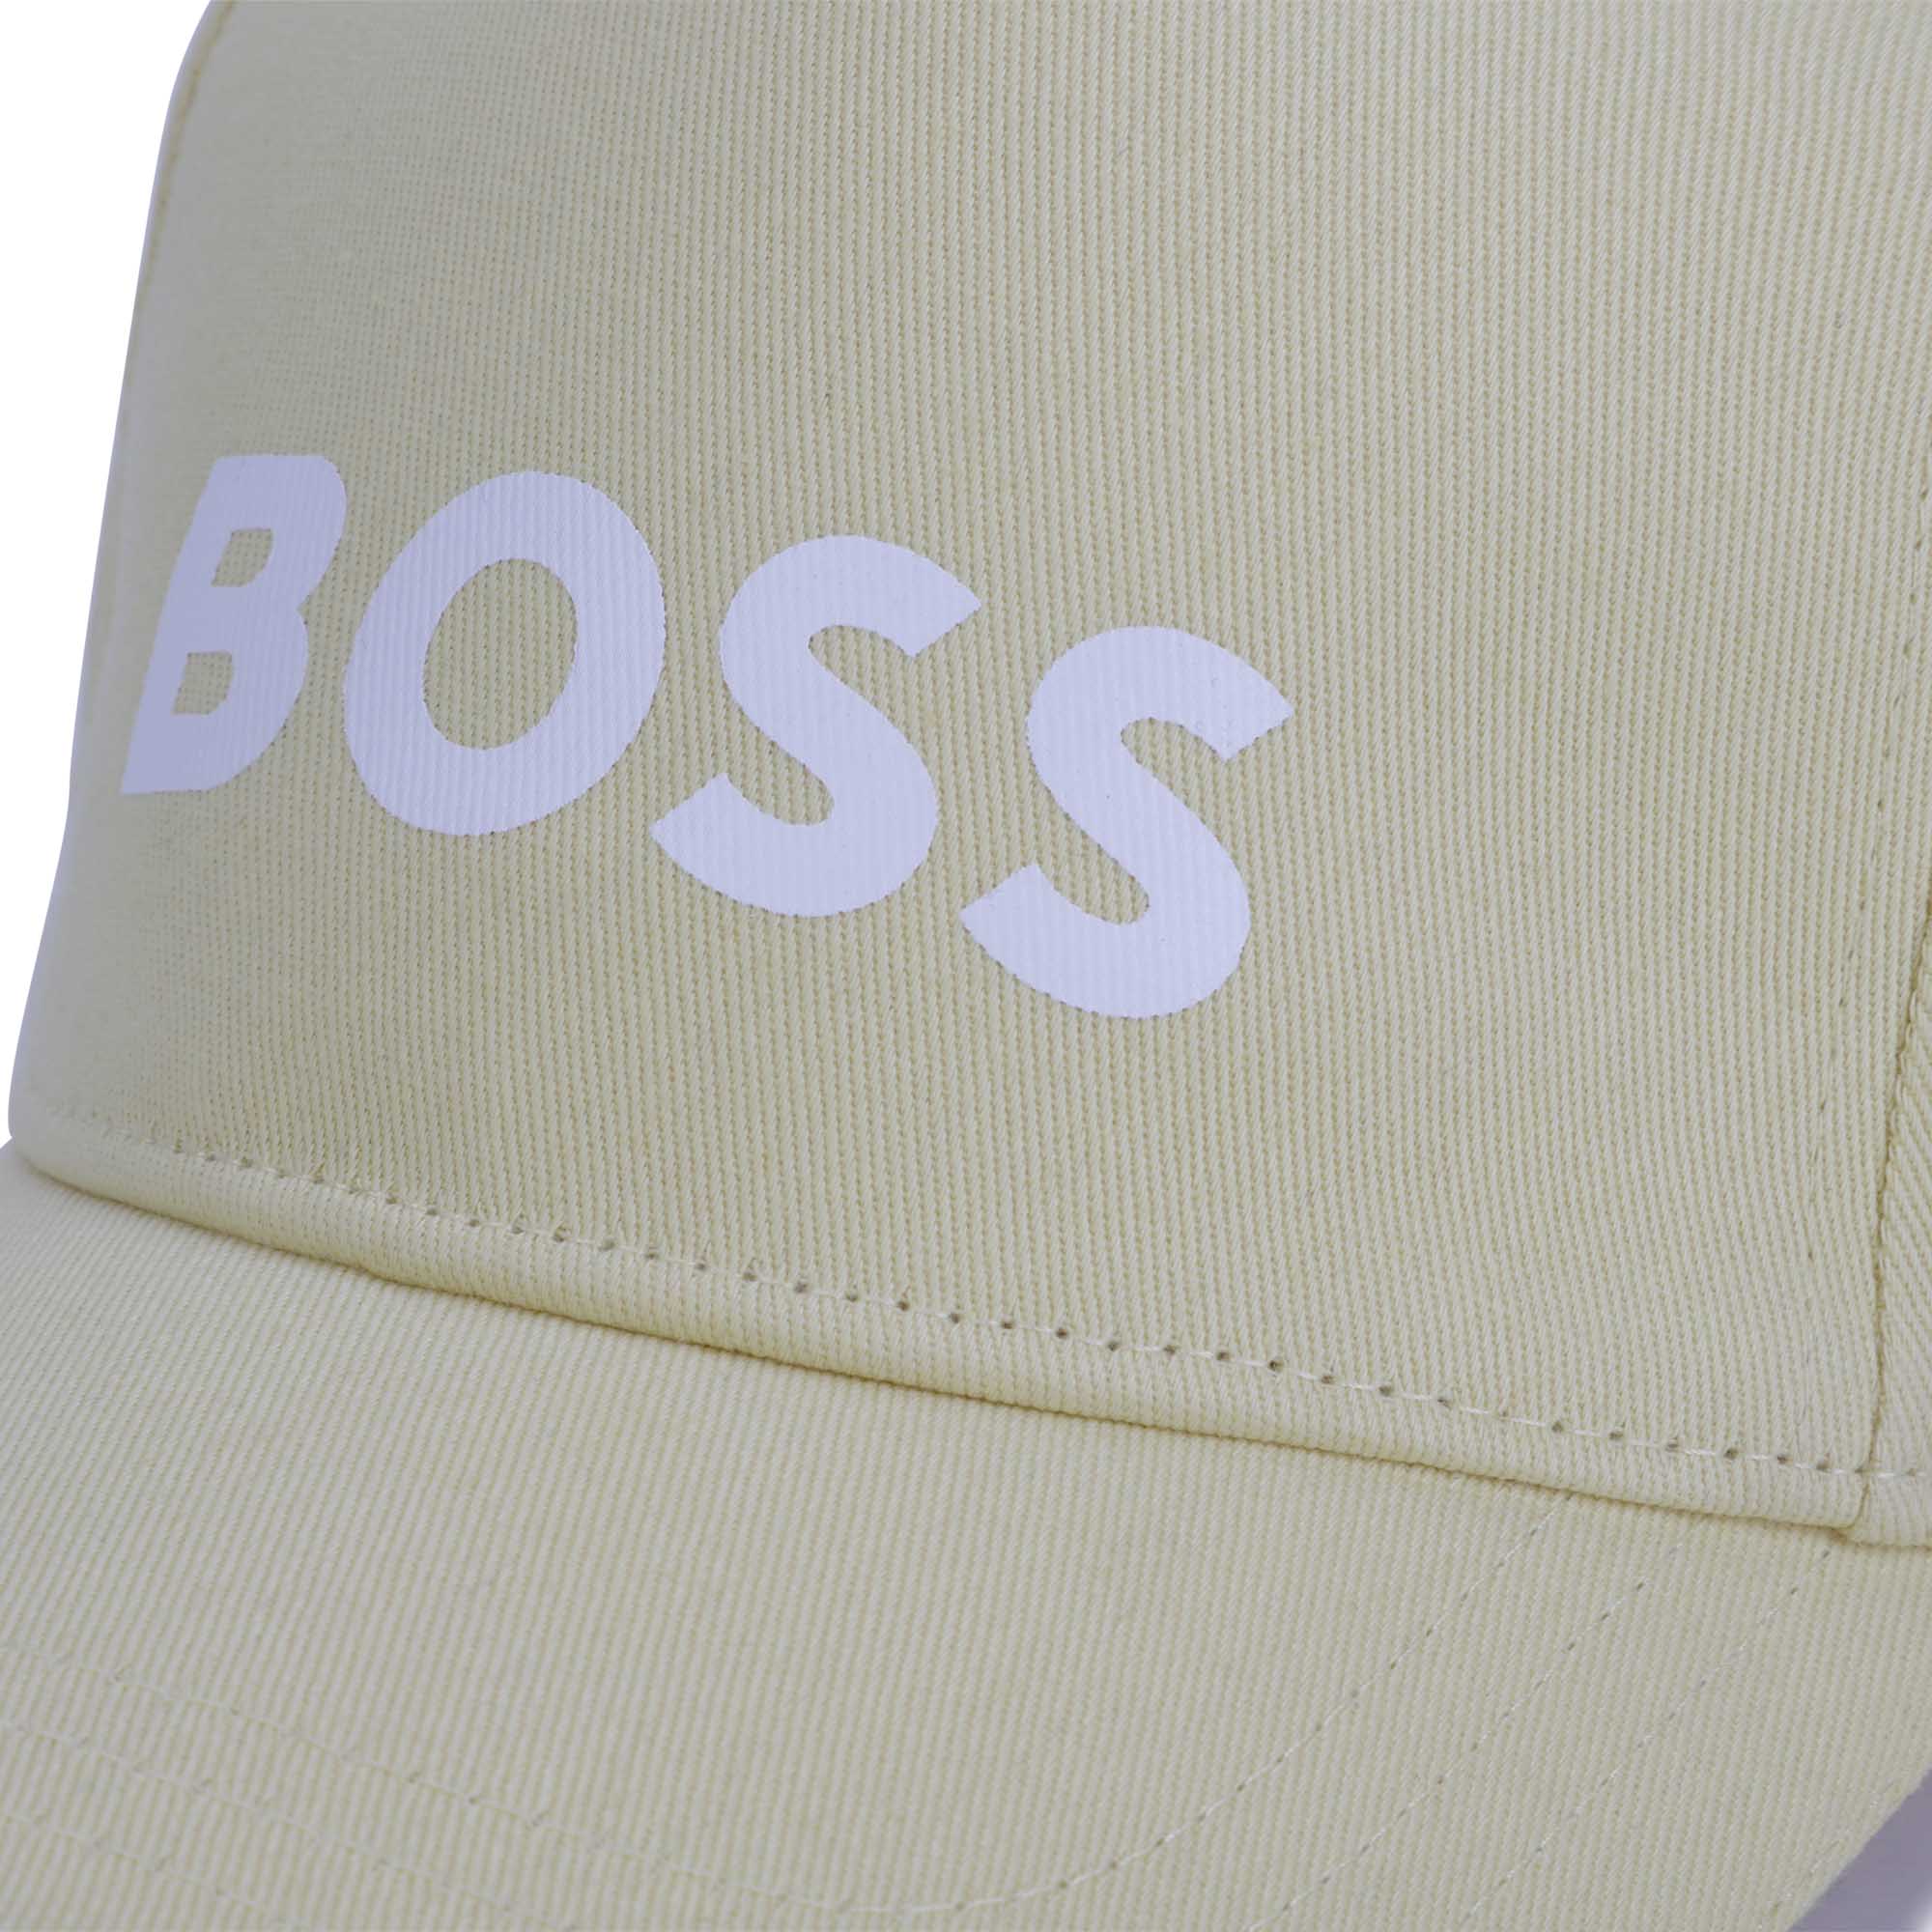 Boss boys yellow cap close up